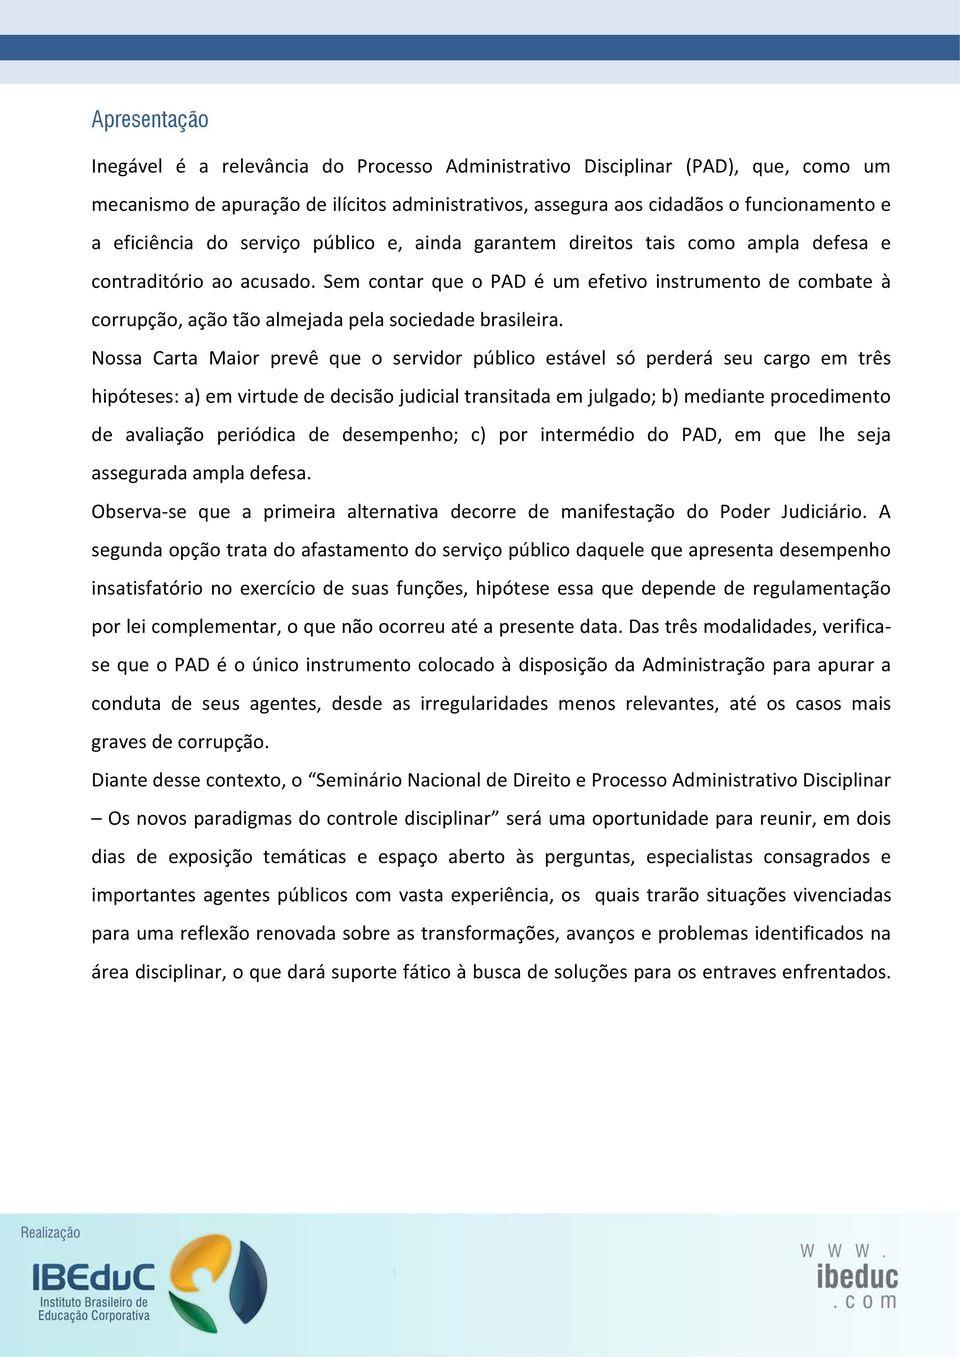 Sem contar que o PAD é um efetivo instrumento de combate à corrupção, ação tão almejada pela sociedade brasileira.